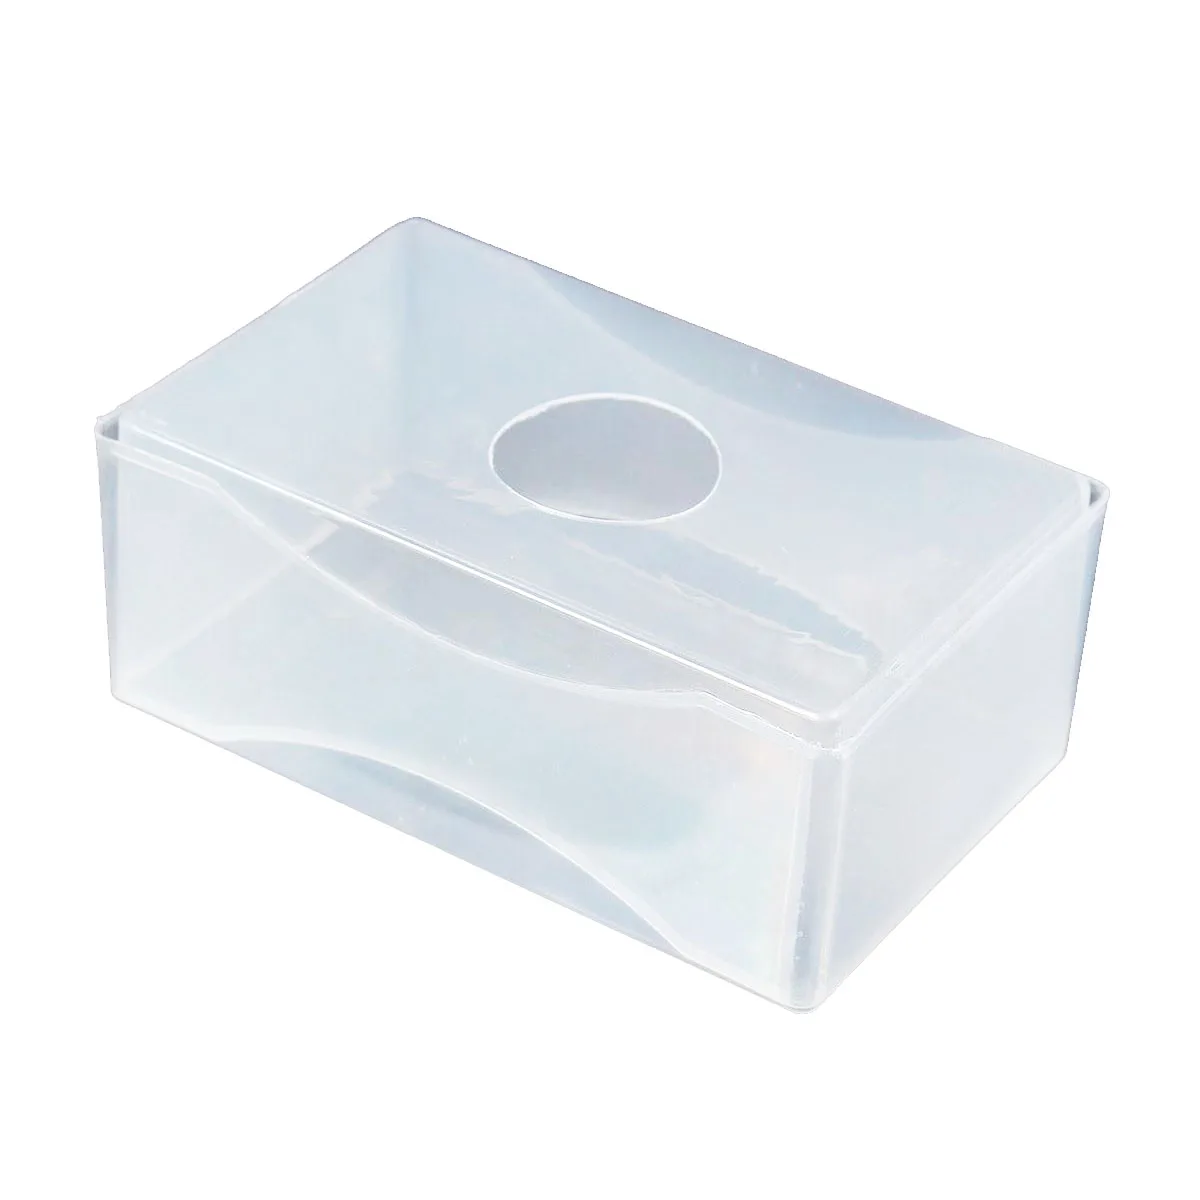 10 X Бизнес карты коробка Пластик держатели ясно Craft Бусины контейнер для хранения Коробки белый